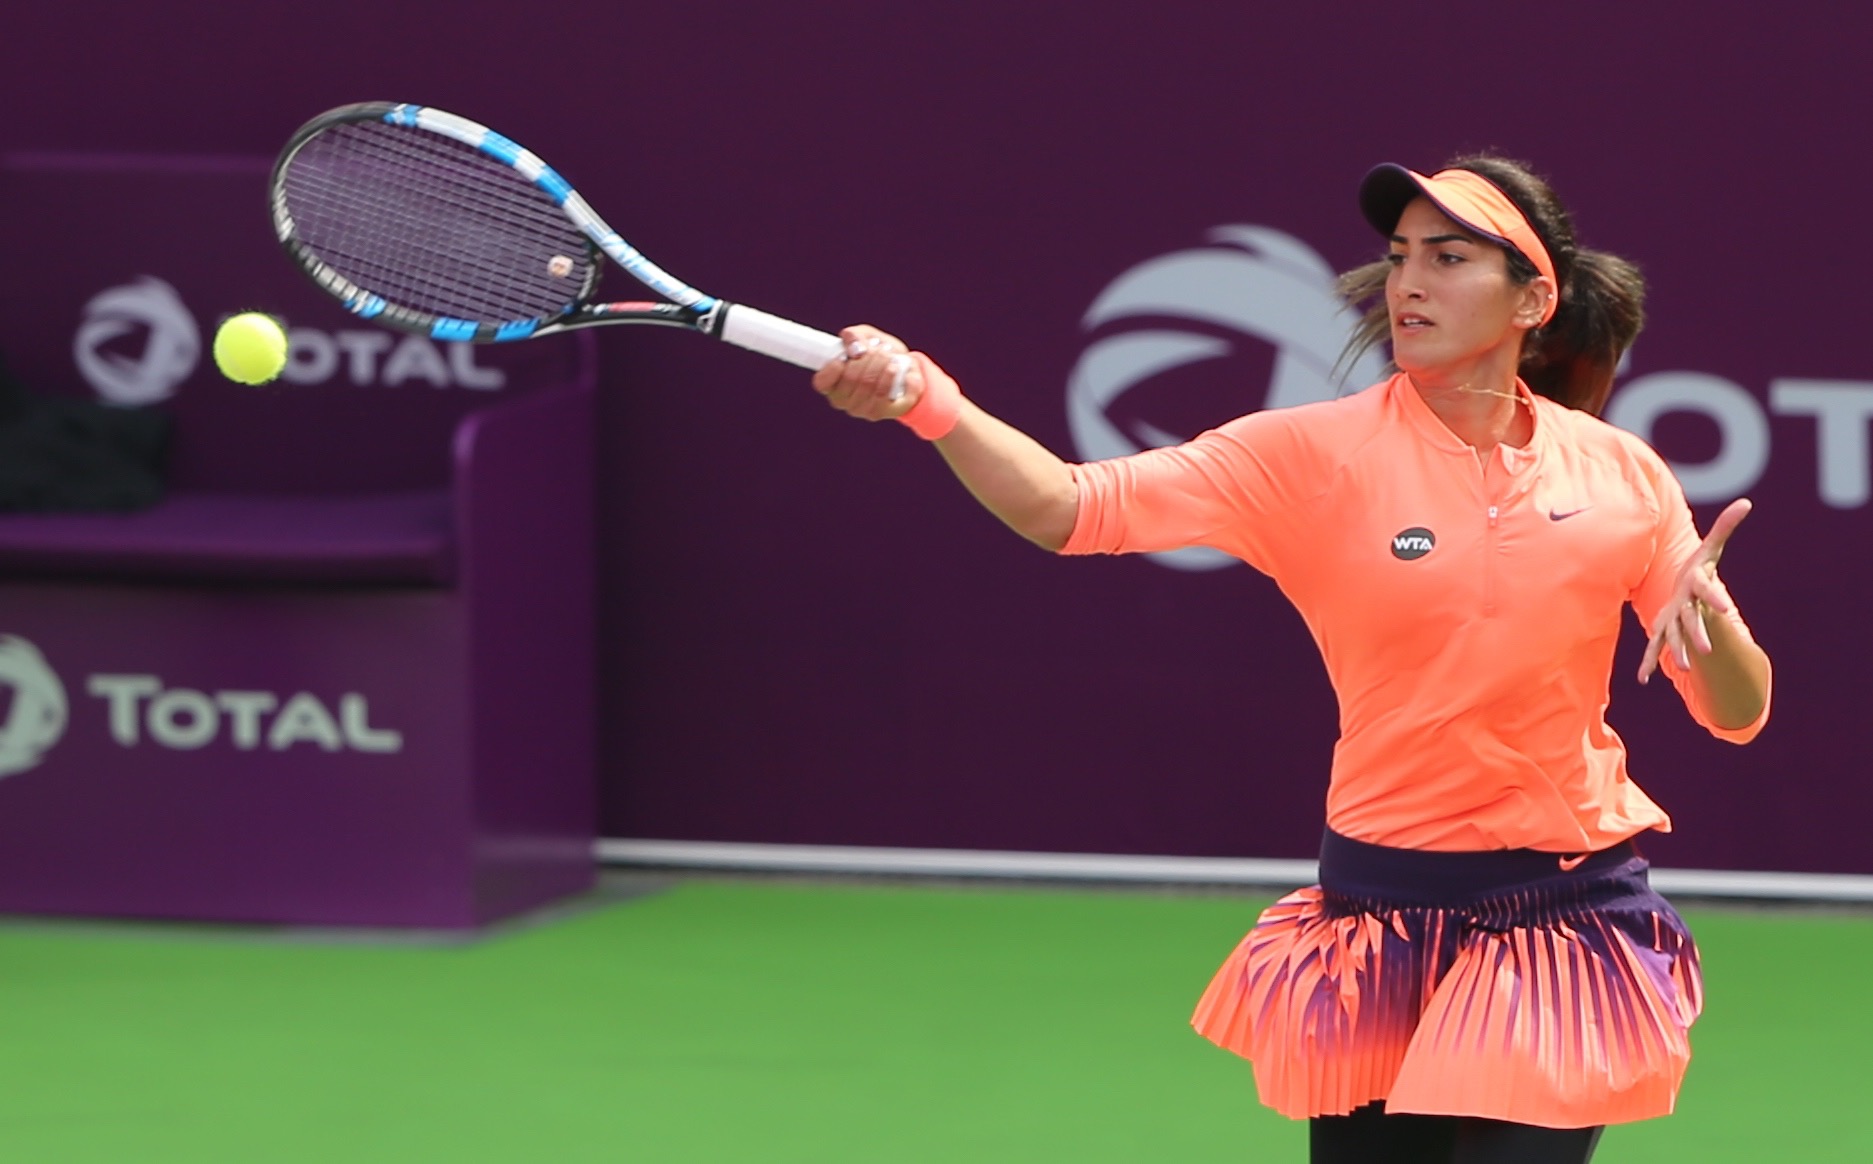 Oman Tennis: Fatma Al Nabhani moves into doubles quarters in Tunisia